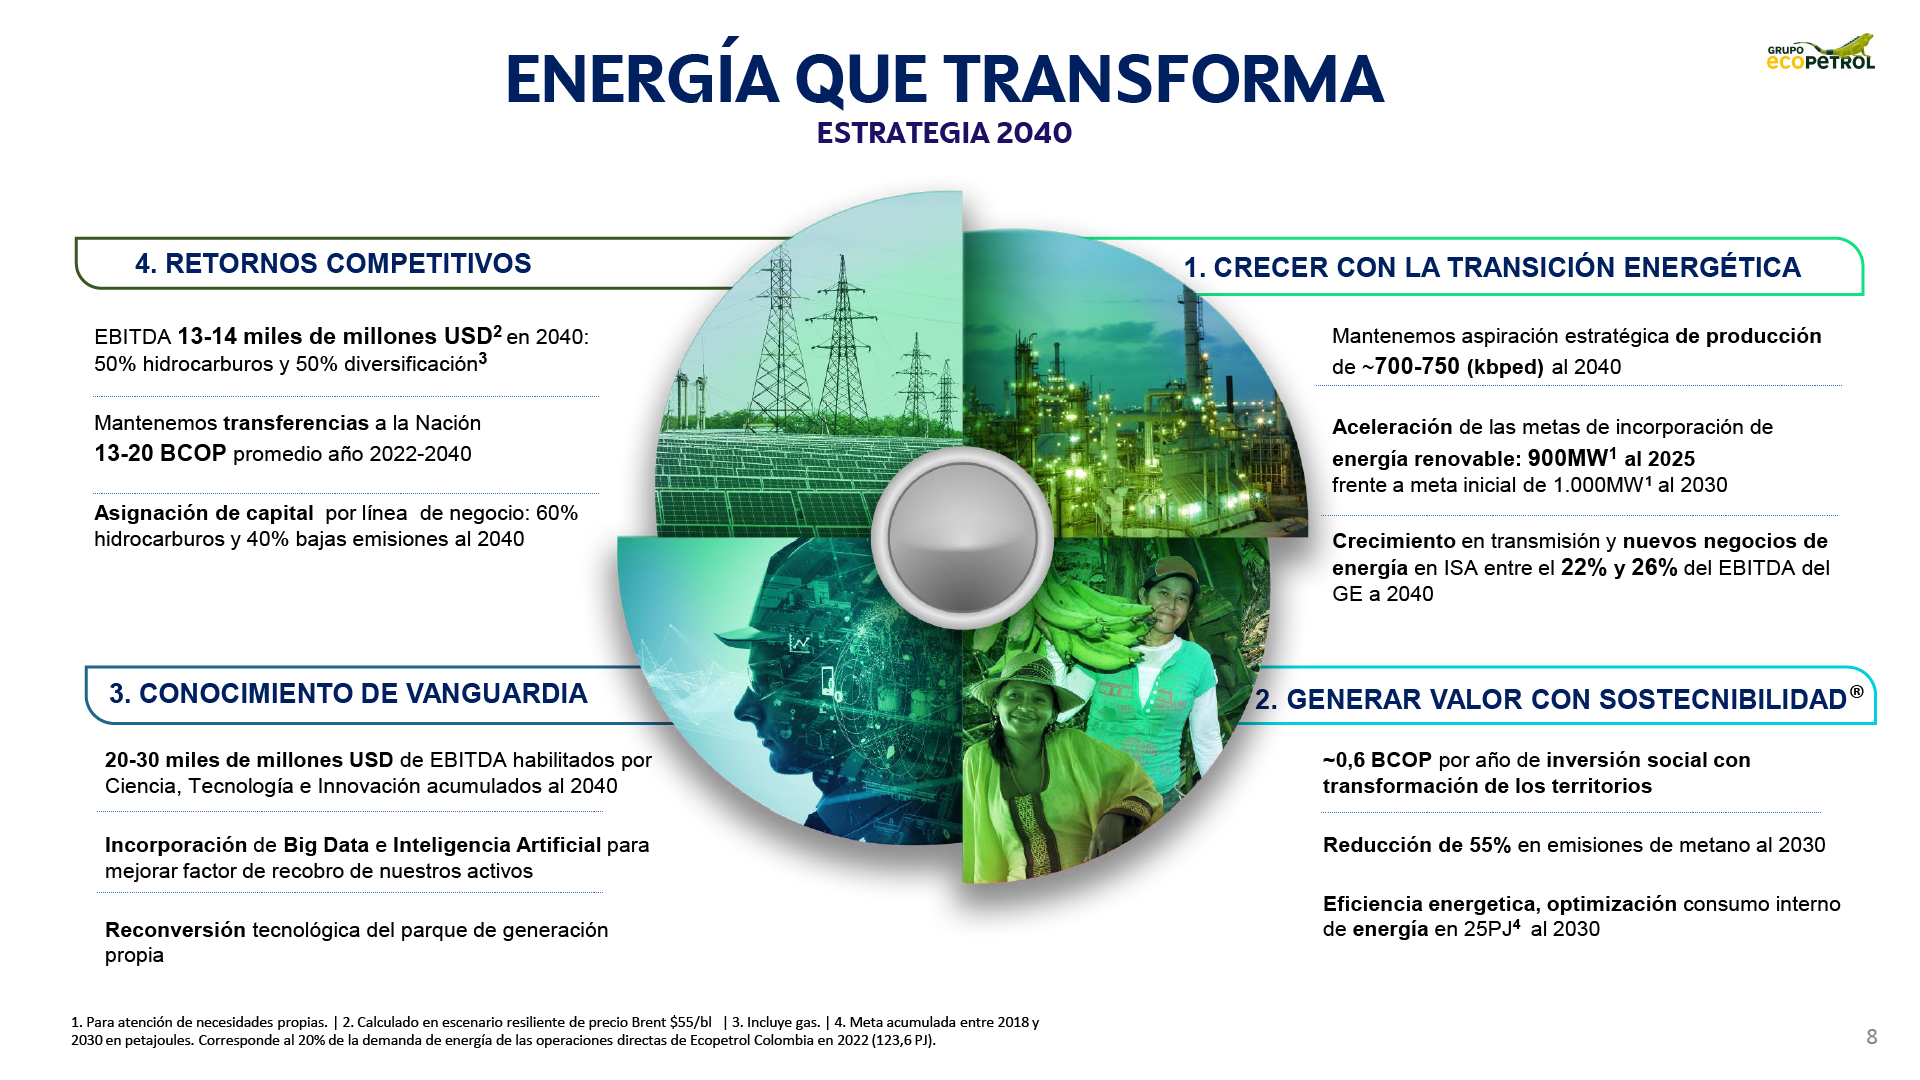 Infografía que explica la estrategia del grupo Ecopetrol al año 2040